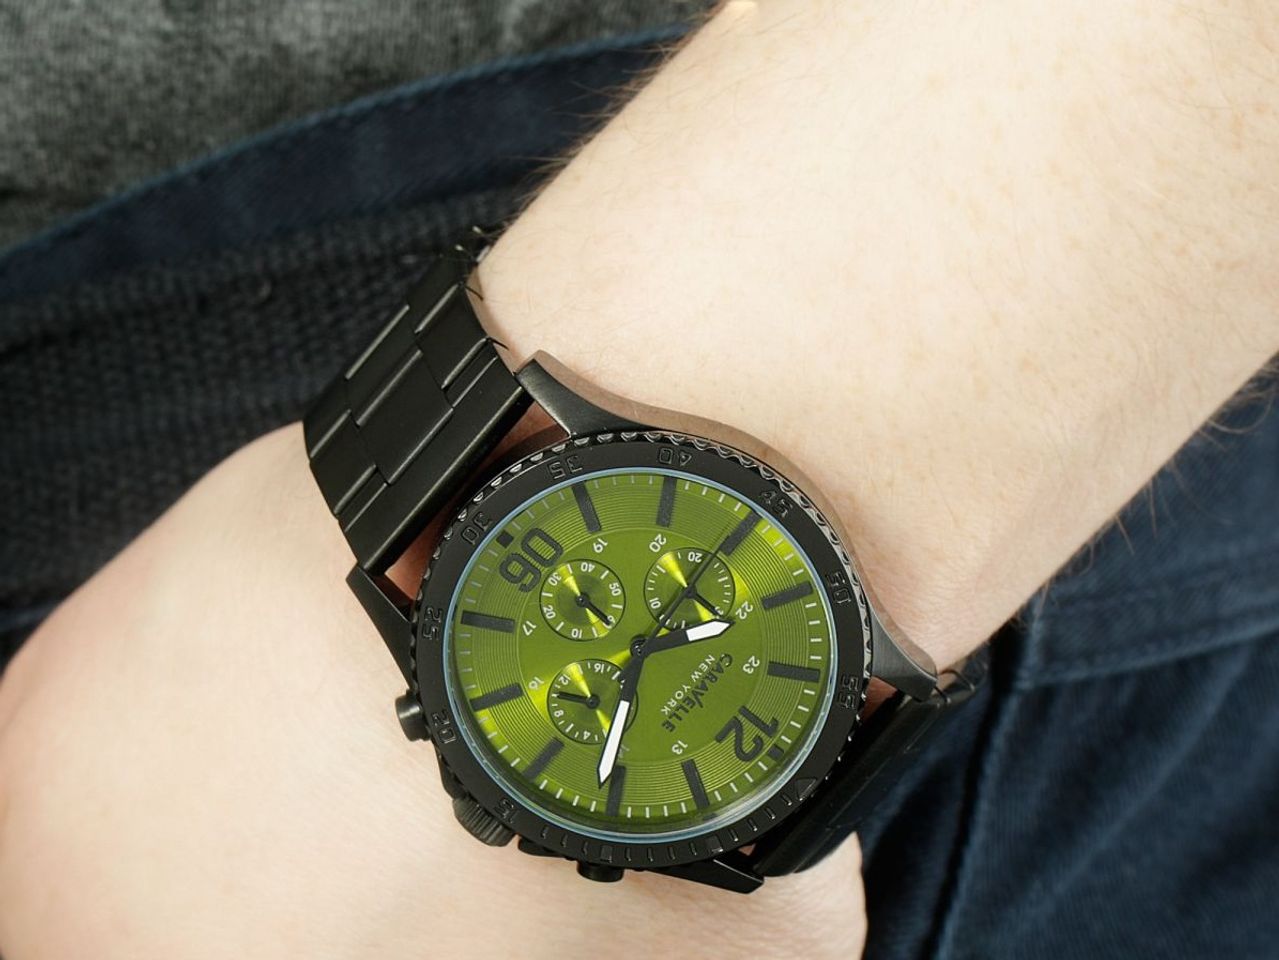 Chiếc đồng hồ Caravelle New York trên tay khỏe khoắn cực chất